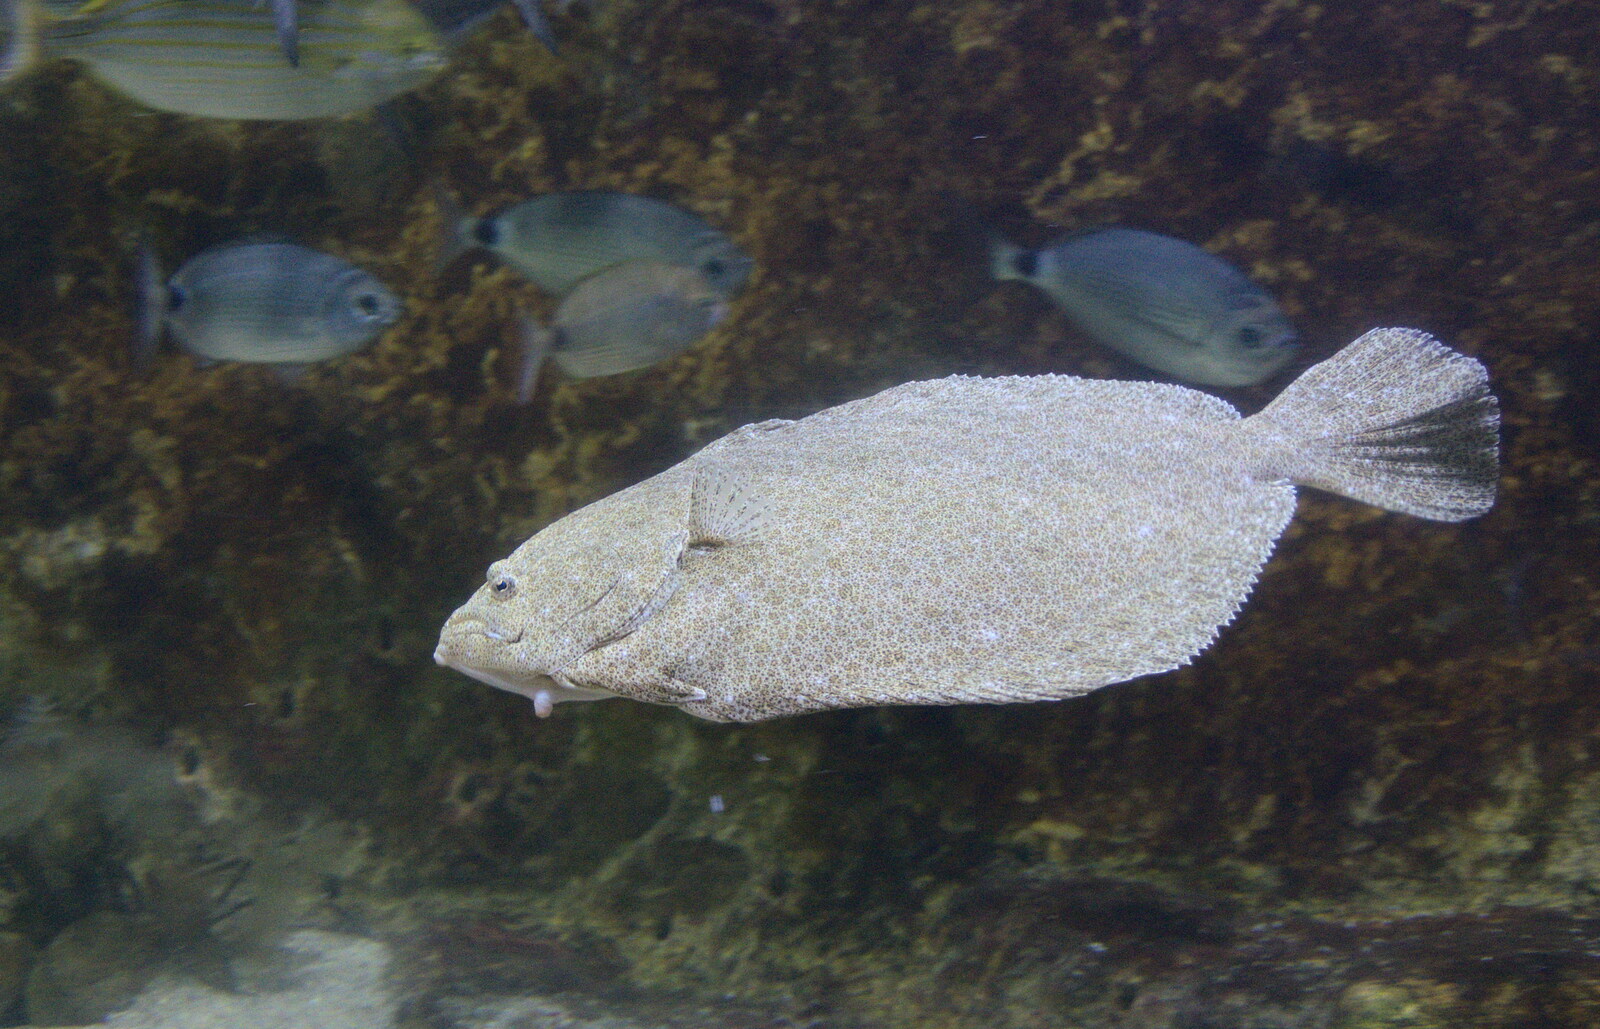 A grumpy fish from L'Aquarium de Barcelona, Port Vell, Catalonia, Spain - 23rd October 2017